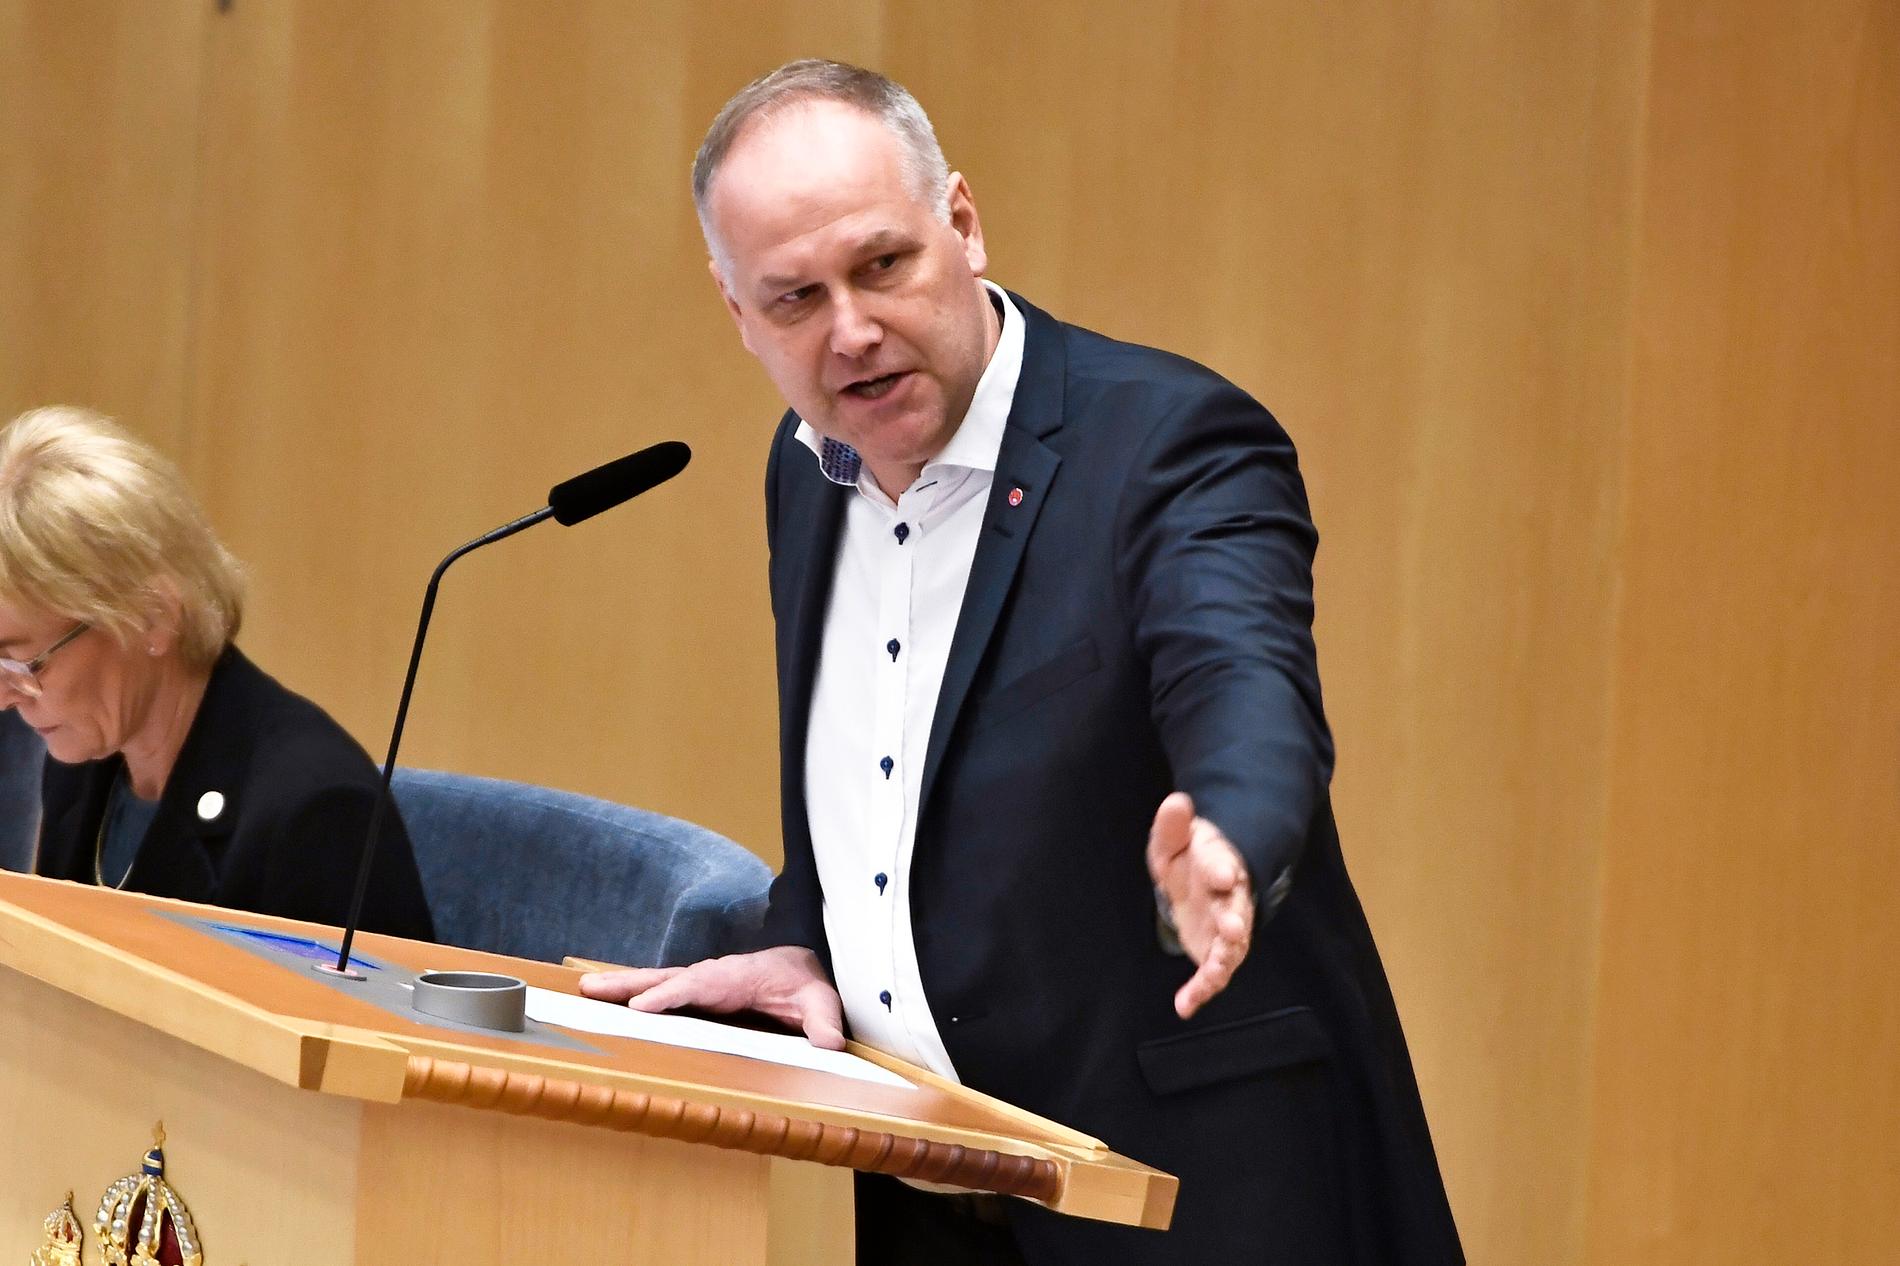 Vänsterpartiets partiledare Jonas Sjöstedt (V) under partiledardebatt i riksdagen i Stockholm.